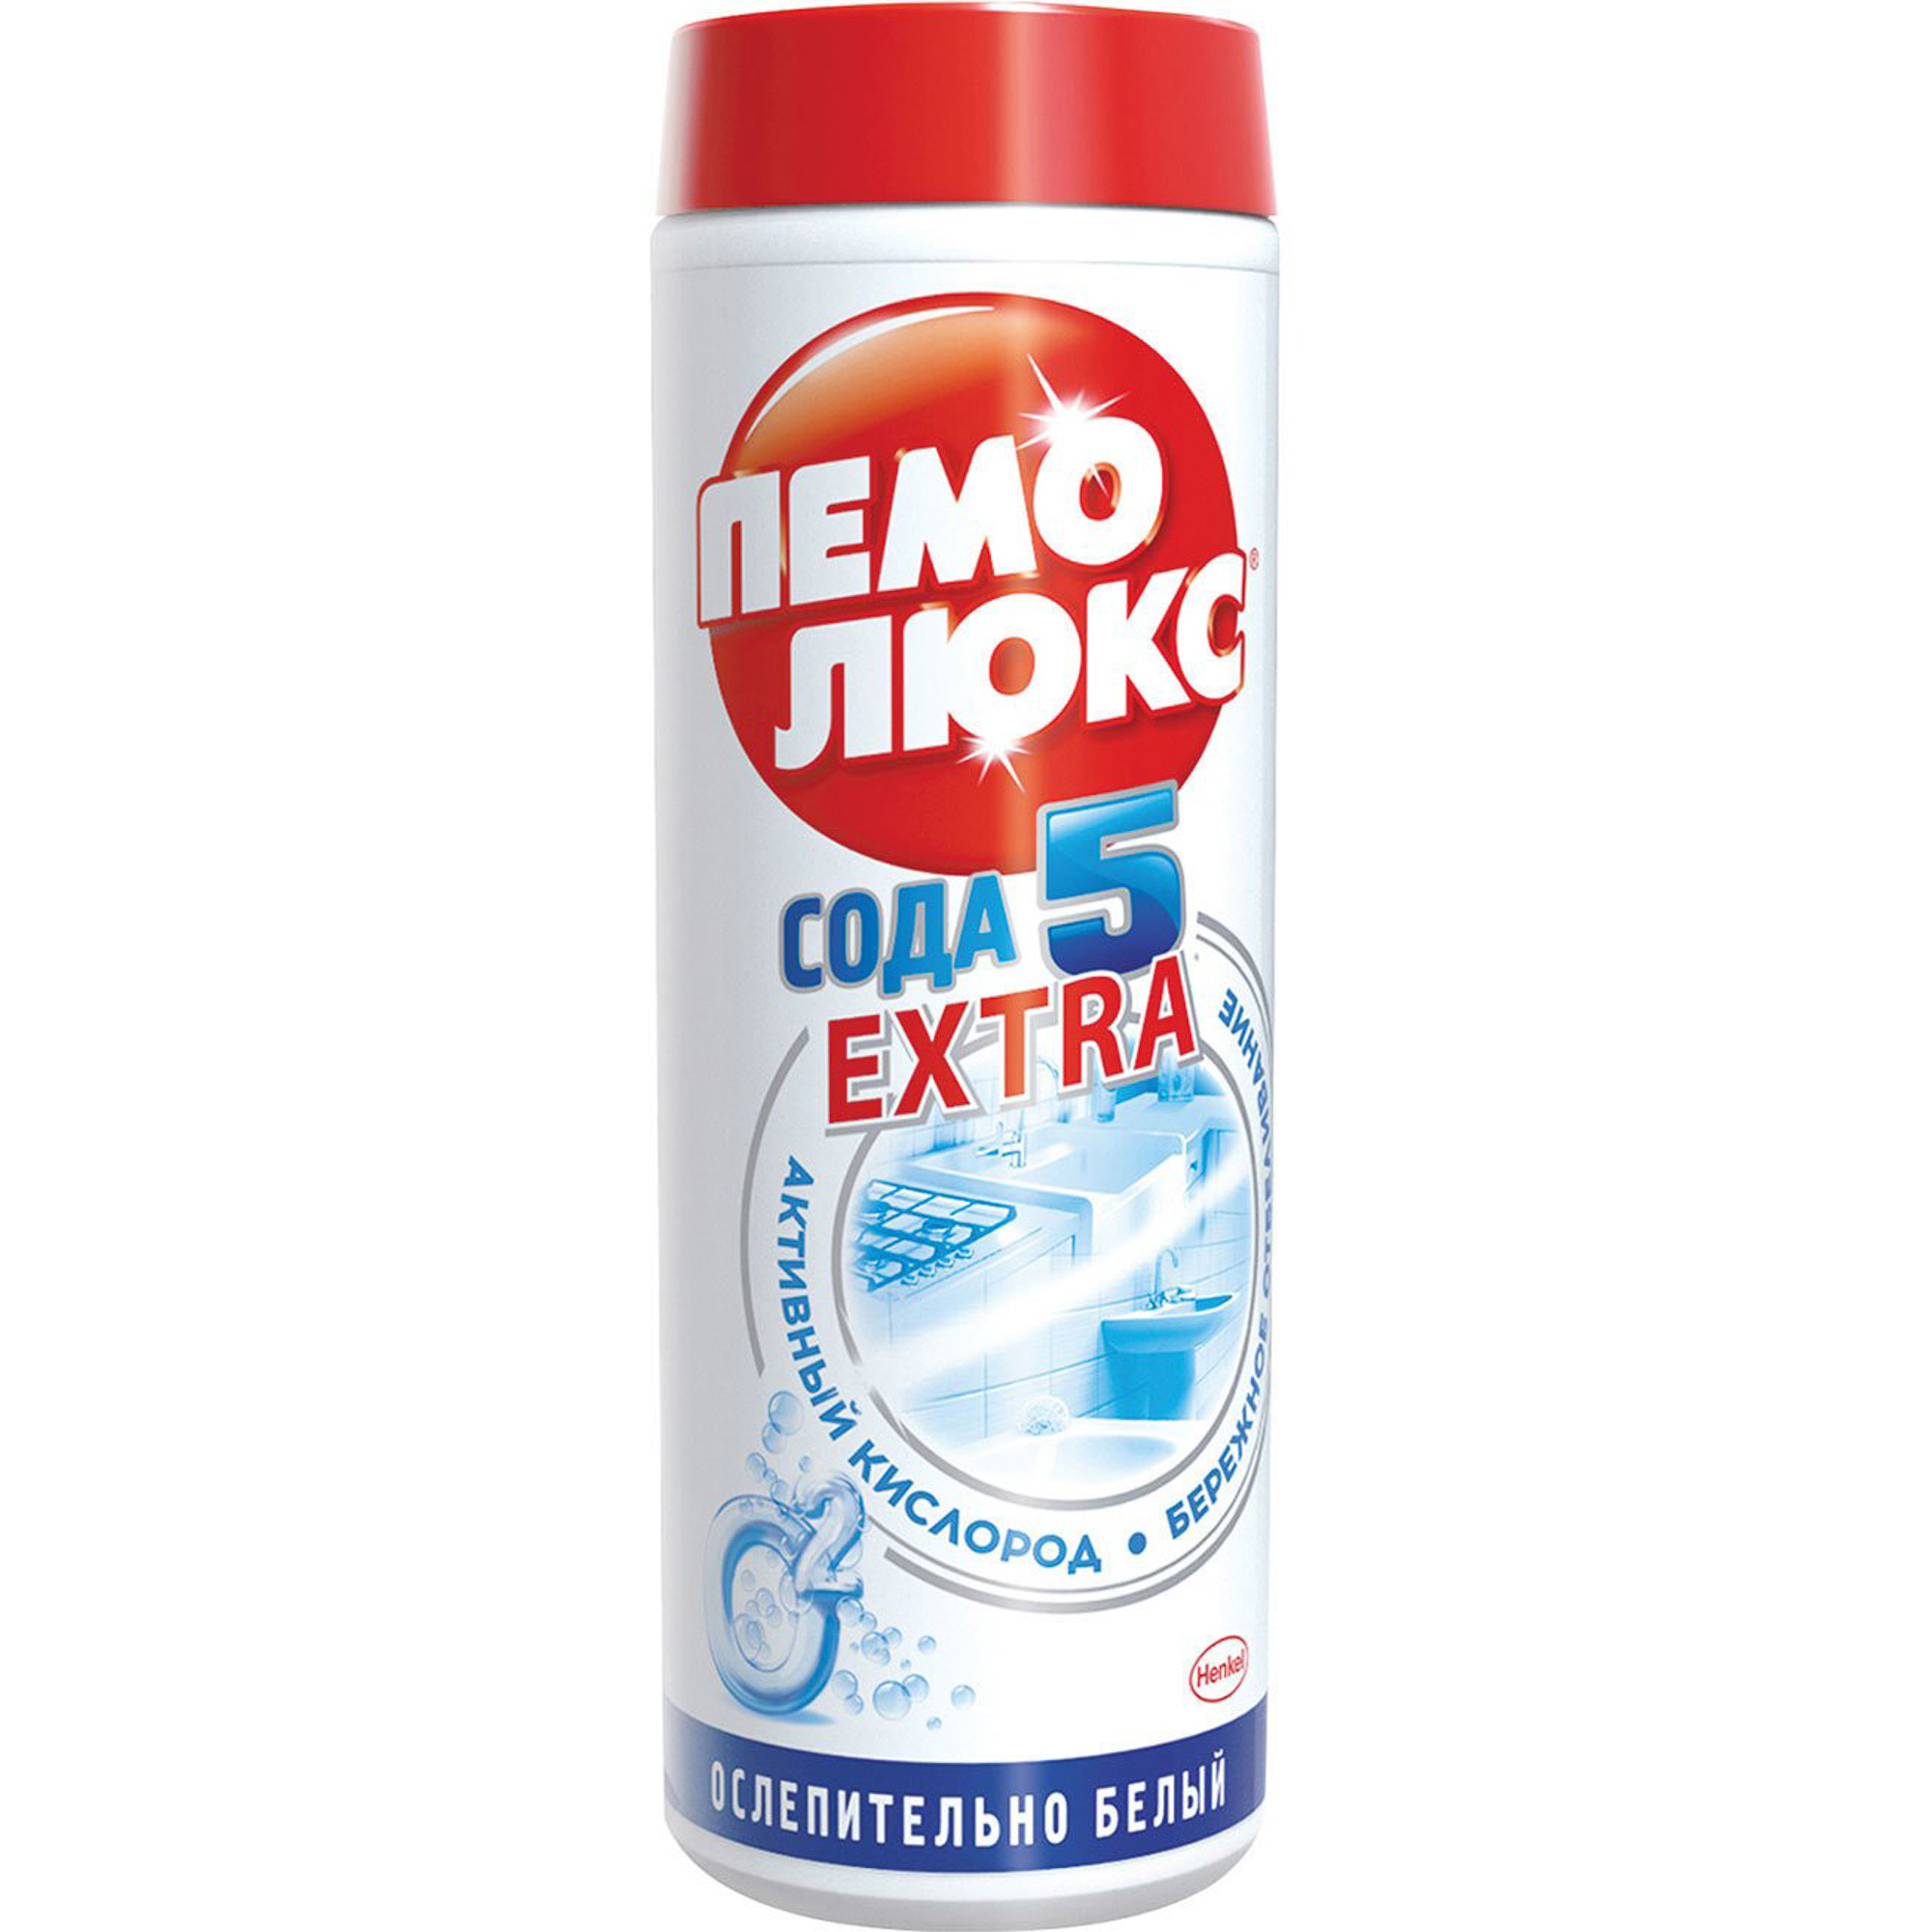 Чистящее средство Пемолюкс Сода 5 Экстра Ослепительно белый 480 г